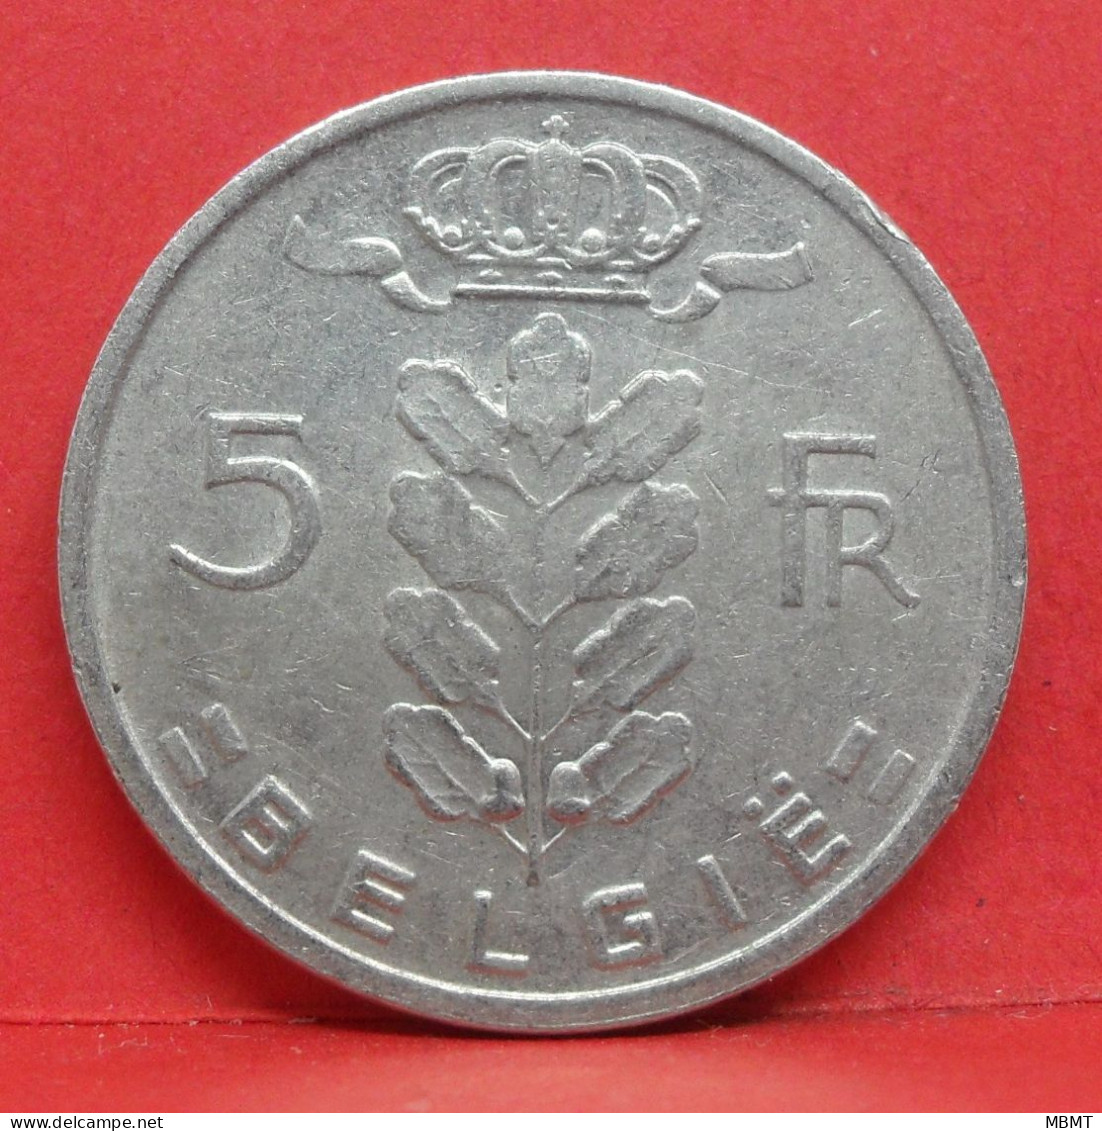 5 Frank 1965 - TTB - Pièce Monnaie Belgie - Article N°1987 - 5 Francs